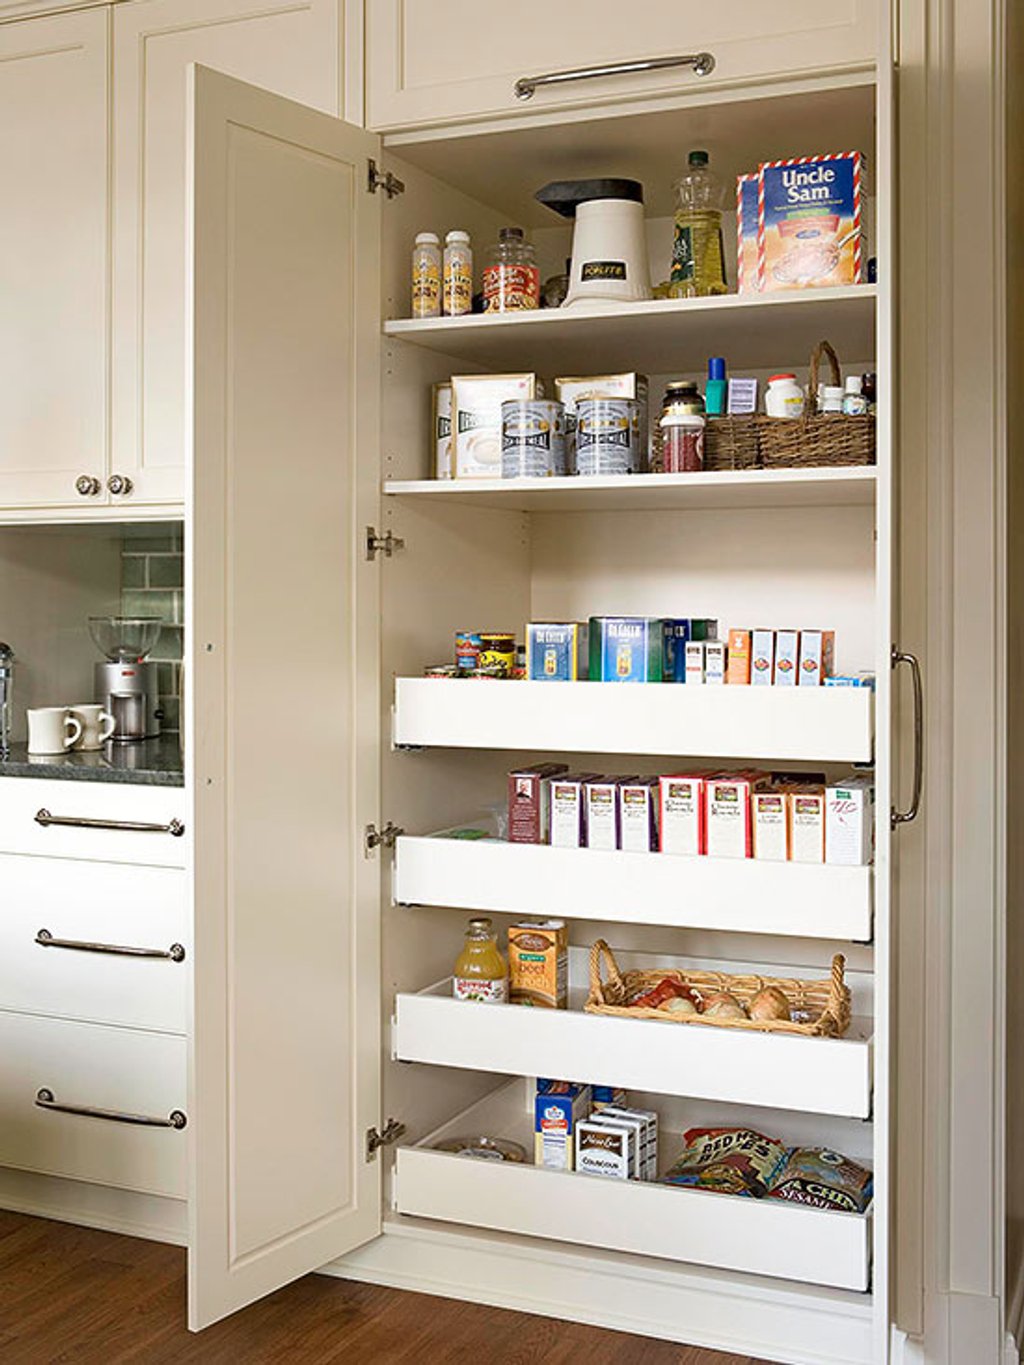 Ngày càng nhiều gia đình trang bị không gian lưu trữ đồ khô riêng cho một căn bếp ngăn nắp, khoa học. Bạn có thể lắp tủ đồ khô hoặc xây một căn phòng riêng, tuỳ nhu cầu và diện tích nhà ở.